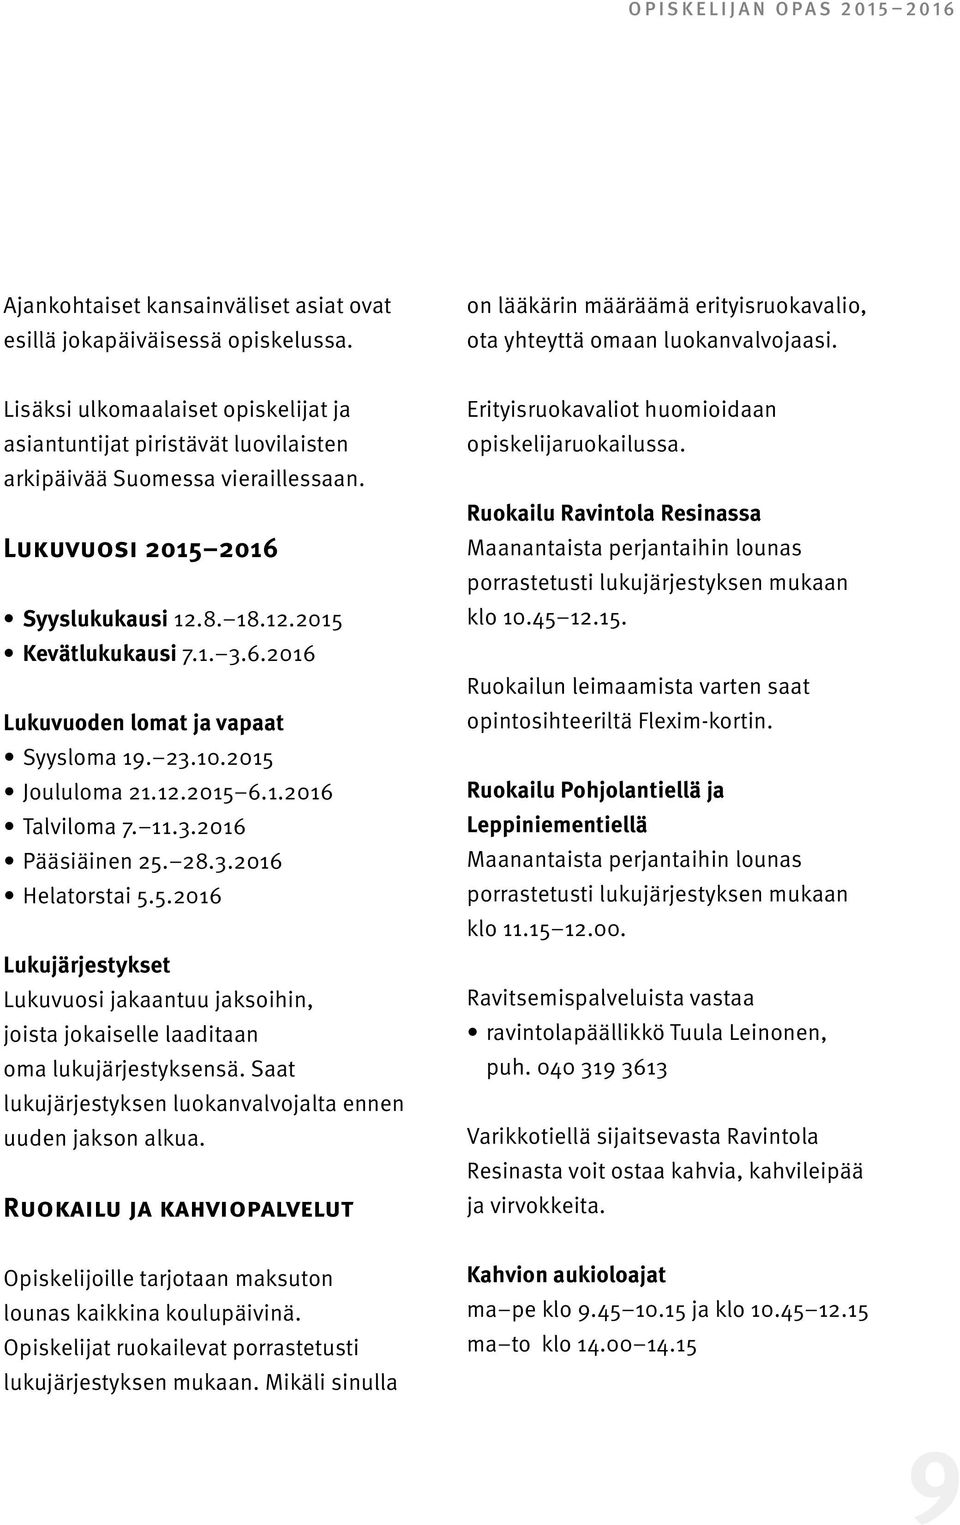 23.10.2015 Joululoma 21.12.2015 6.1.2016 Talviloma 7. 11.3.2016 Pääsiäinen 25. 28.3.2016 Helatorstai 5.5.2016 Lukujärjestykset Lukuvuosi jakaantuu jaksoihin, joista jokaiselle laaditaan oma lukujärjestyksensä.